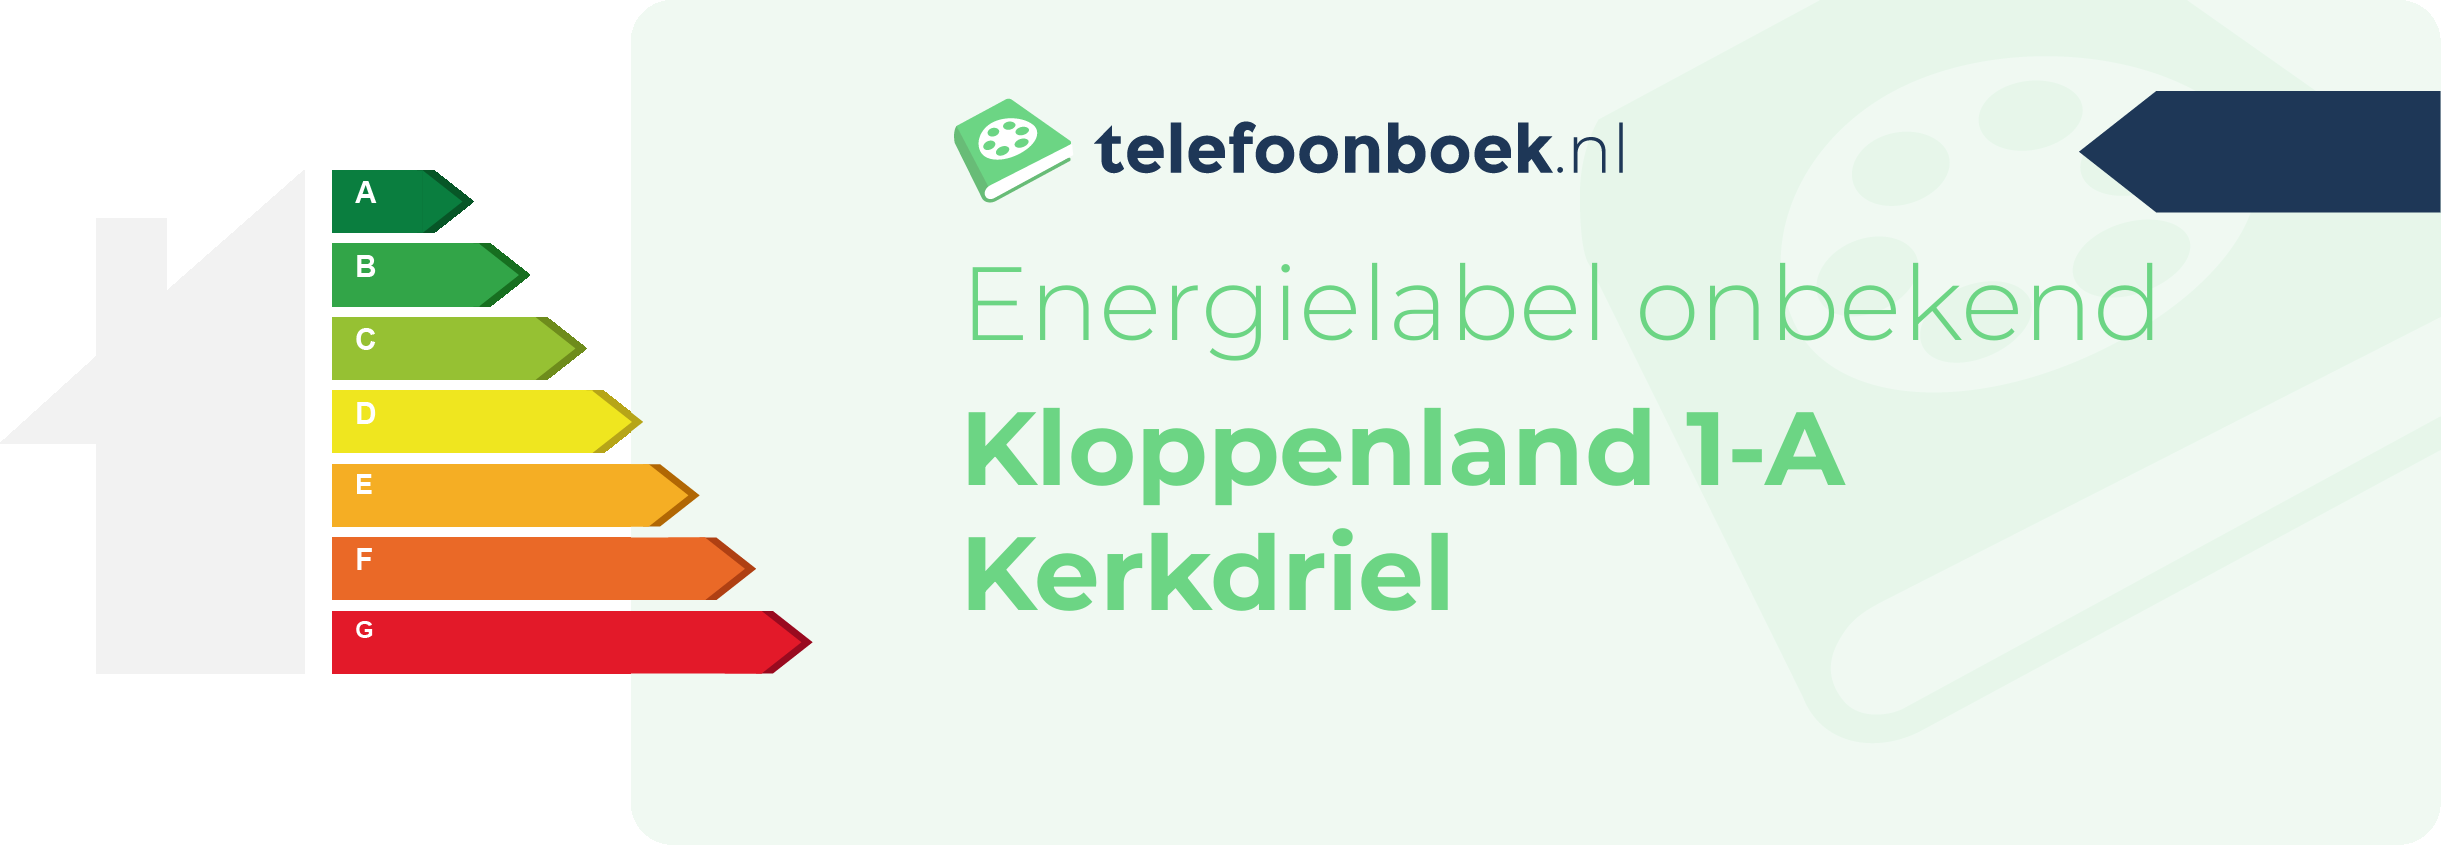 Energielabel Kloppenland 1-A Kerkdriel